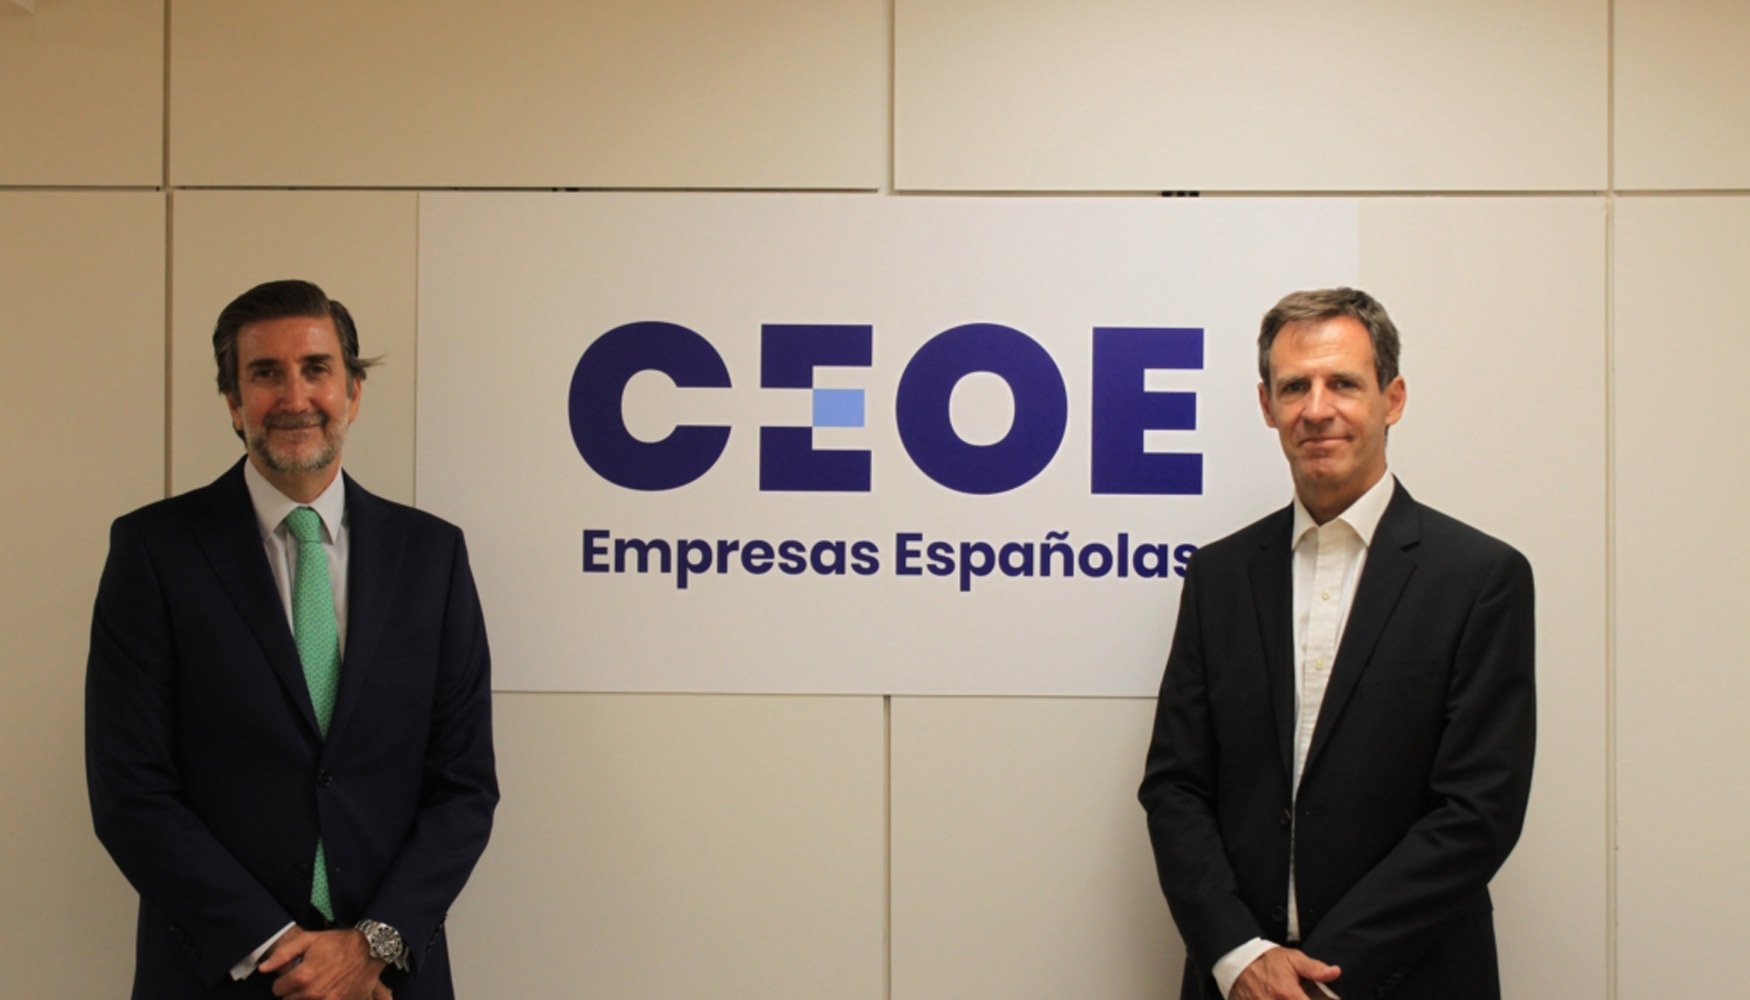 De izquierda a derecha: Javier Caldern, director de Empresas y Organizaciones de la CEOE, y Carlos Peraita, director general de Anefhop...